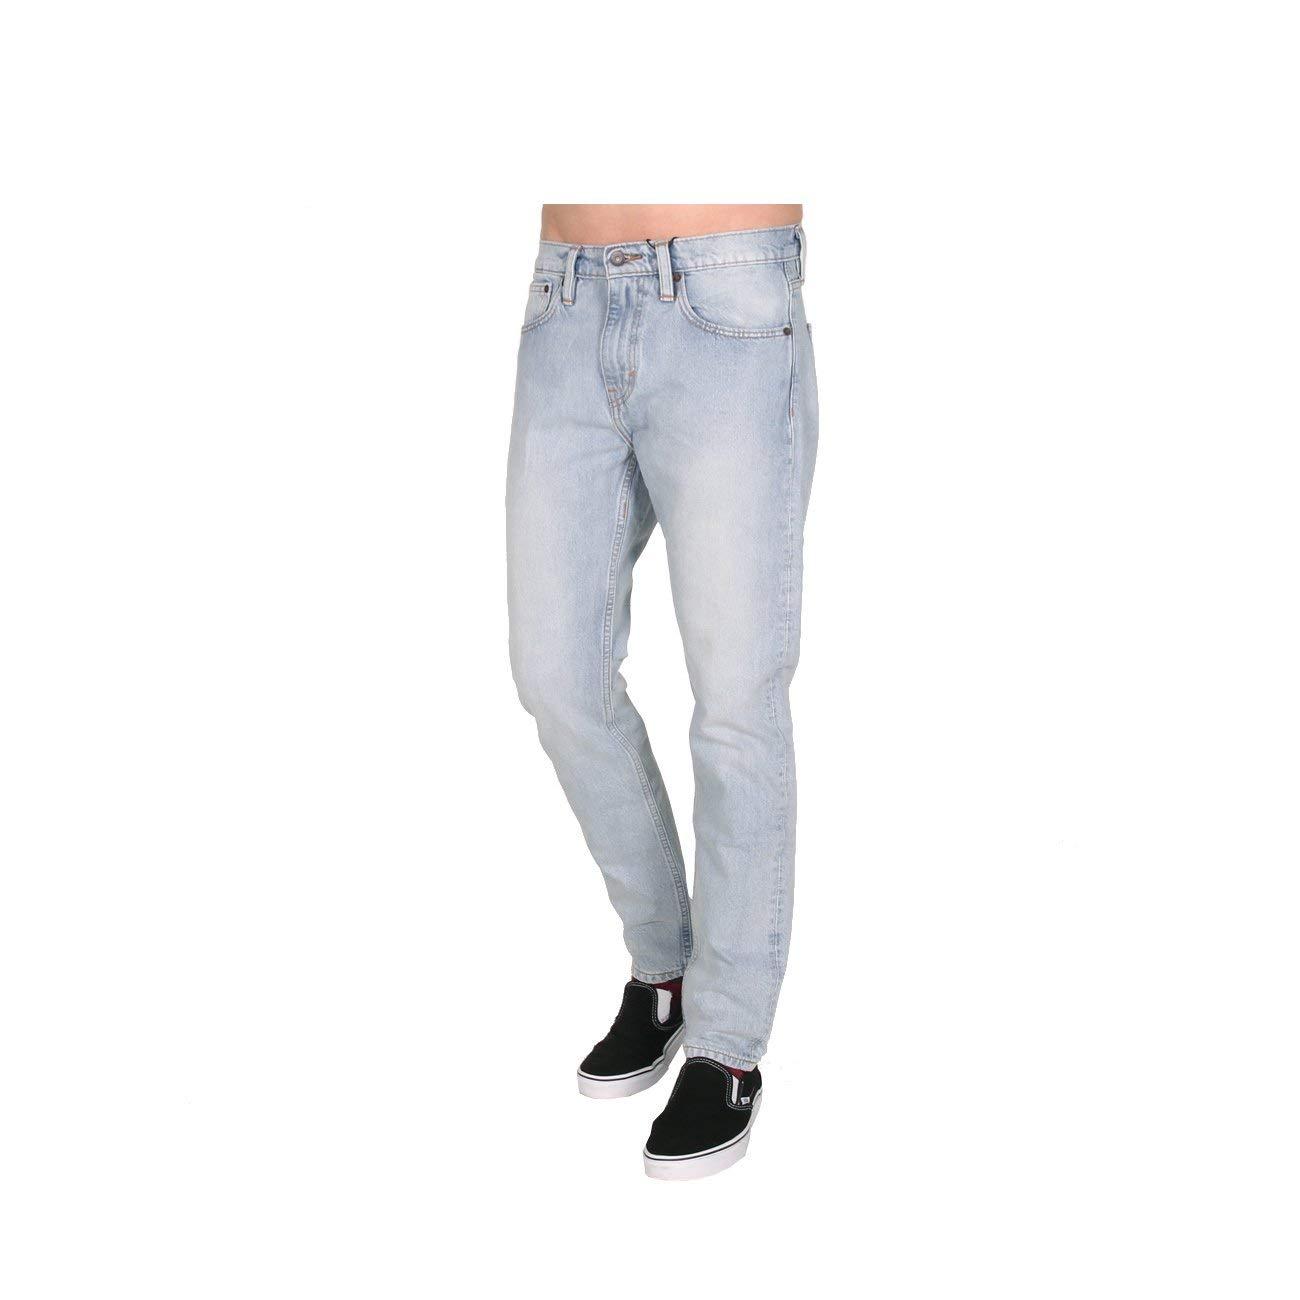 Levi's Synthetic Skateboarding 512 Slim Taper Jeans Blue for Men - Lyst